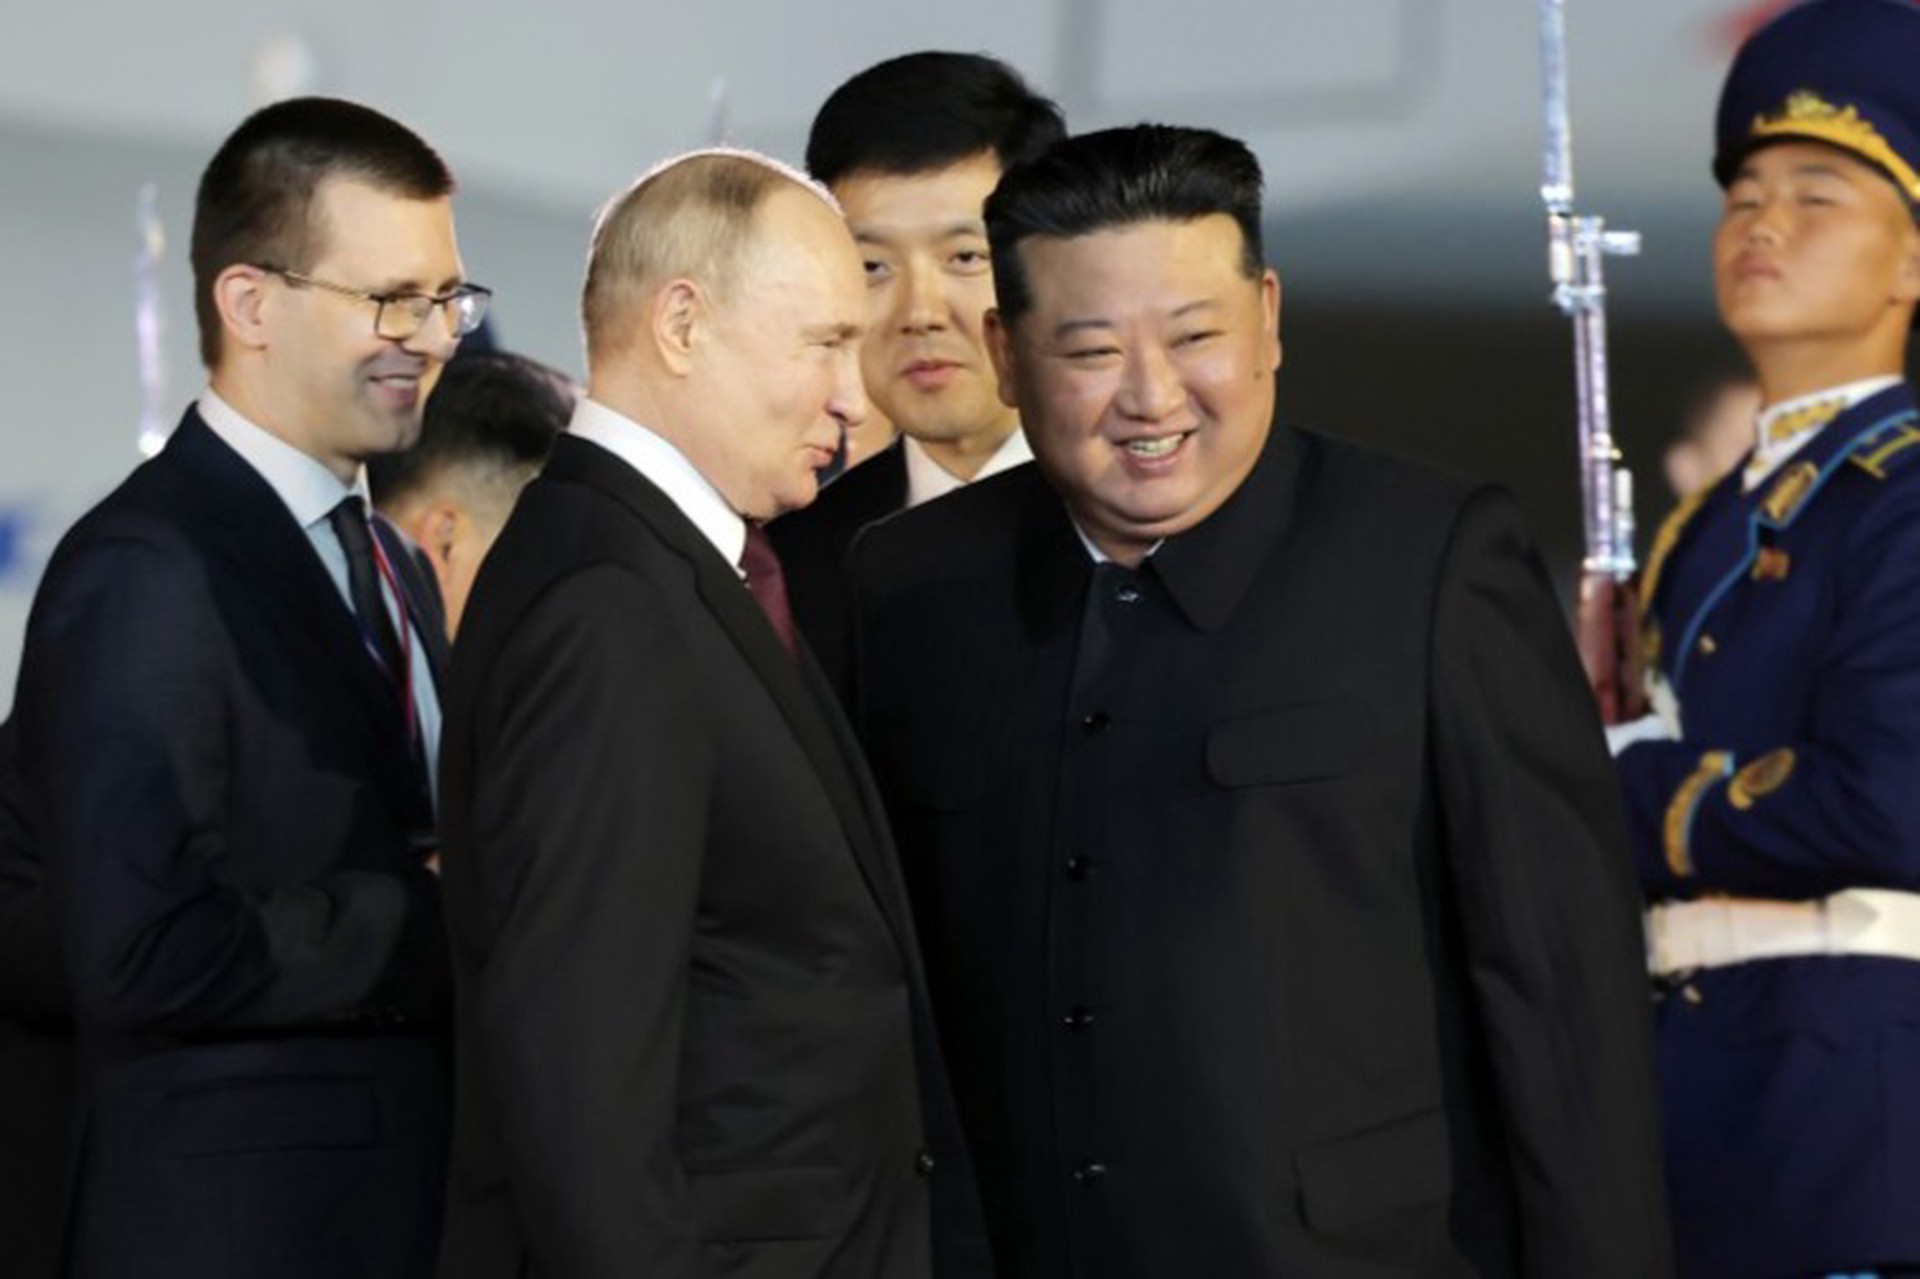 МИД РФ: Лидер КНДР посетит Россию, когда будет база для подписания документов